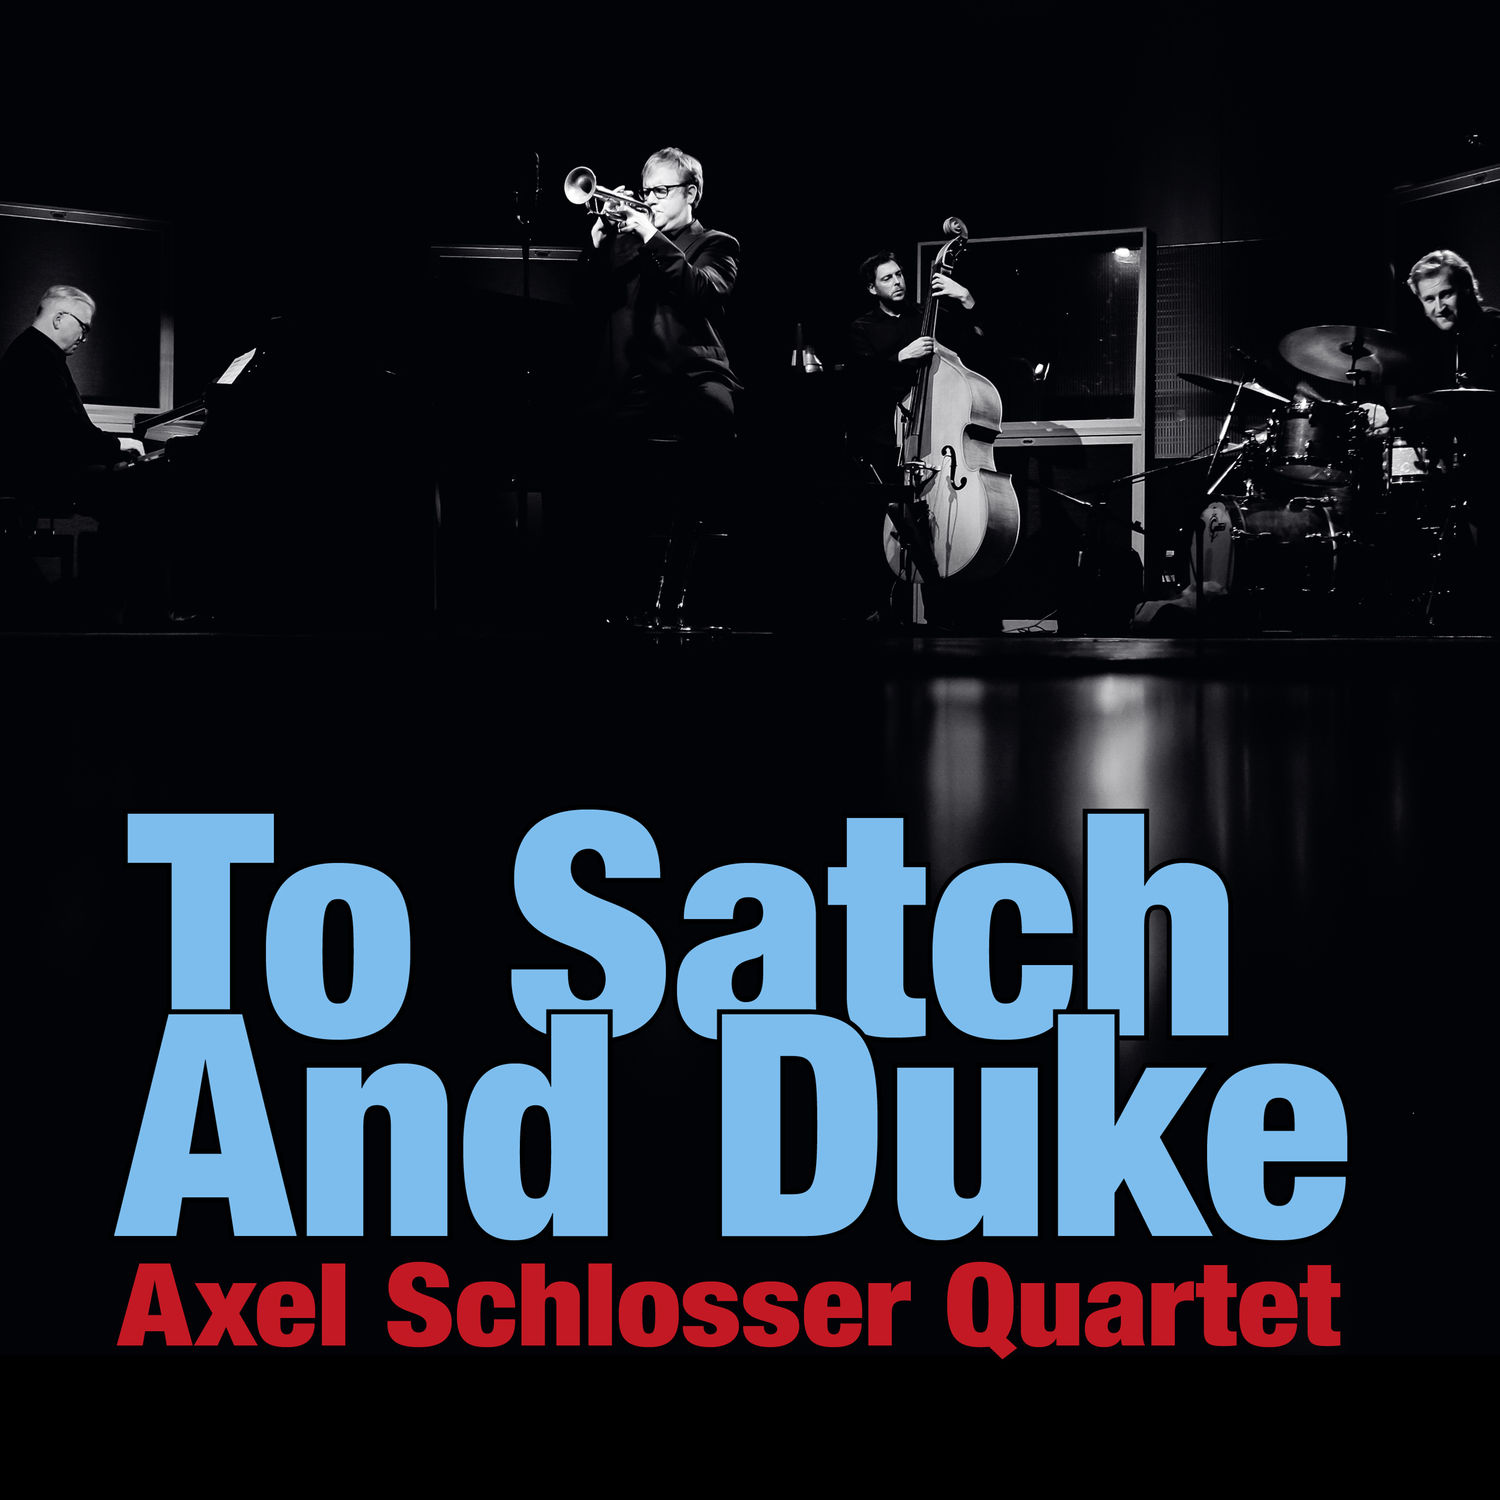 Axel Schlosser Quartet – To Satch and Duke (2020) [FLAC 24bit/96kHz]